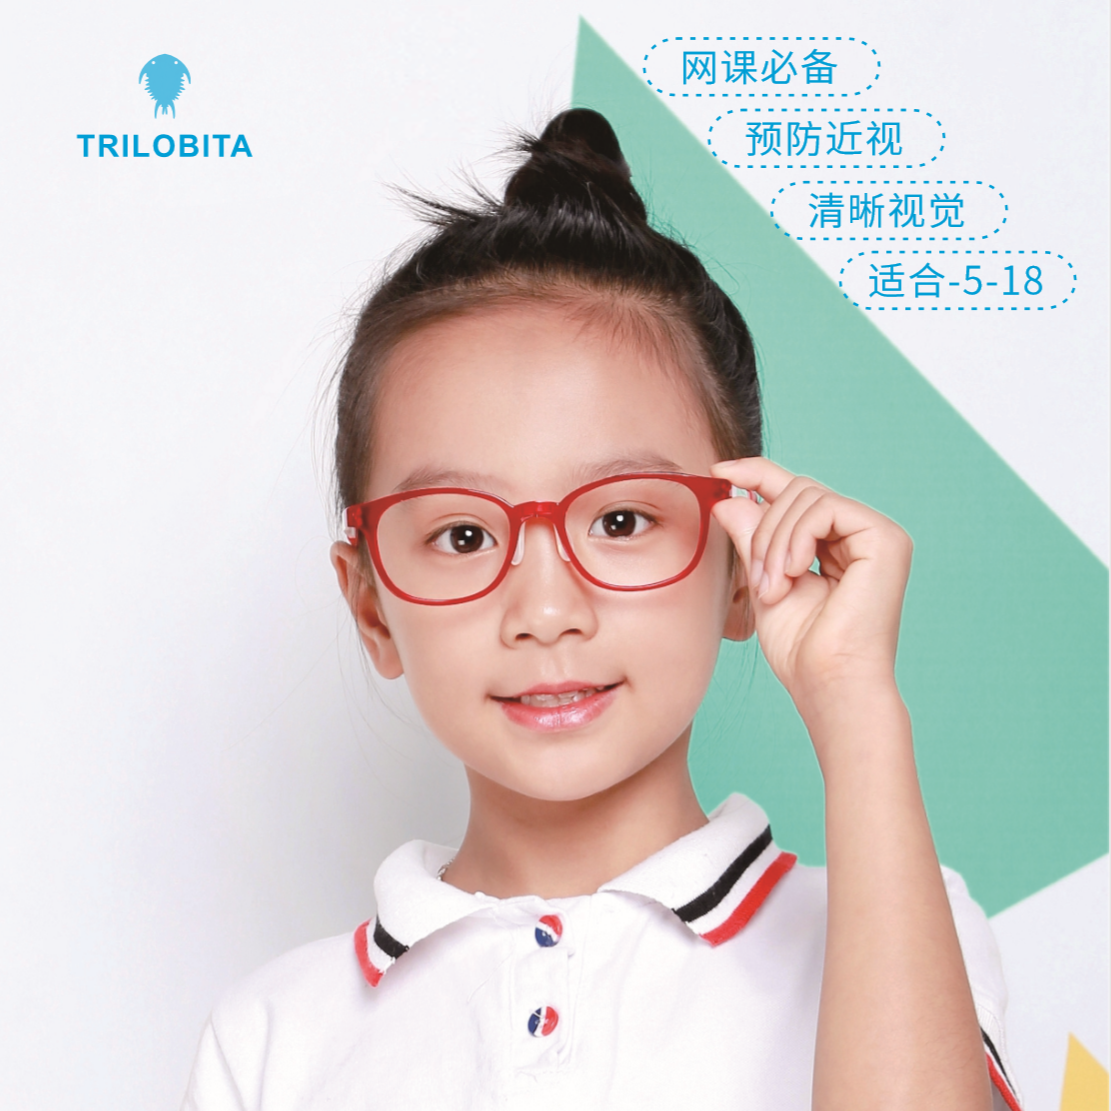 小孩戴眼镜素材-小孩戴眼镜图片-小孩戴眼镜素材图片下载-觅知网